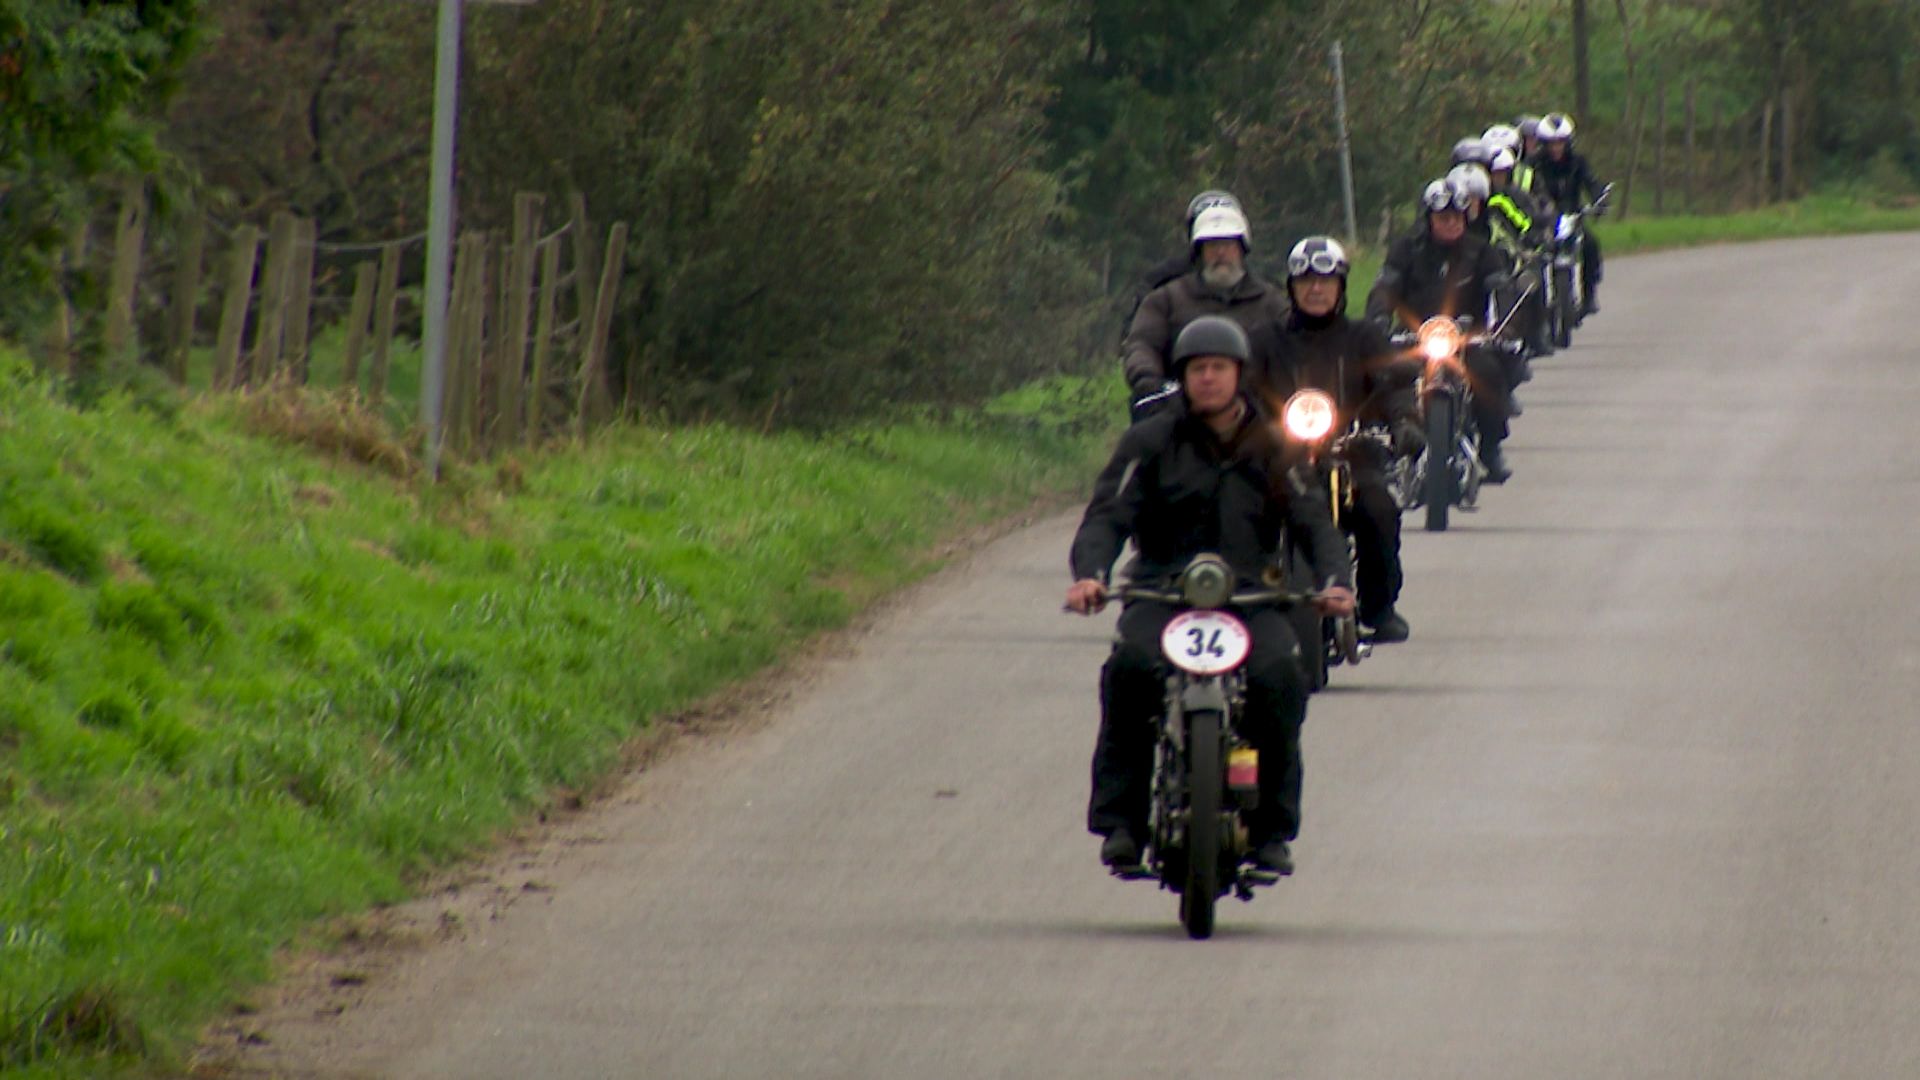 Dans ce club : des passionnés, des collectionneurs mais surtout une bande d’amis qui parcourent la Wallonie à moto